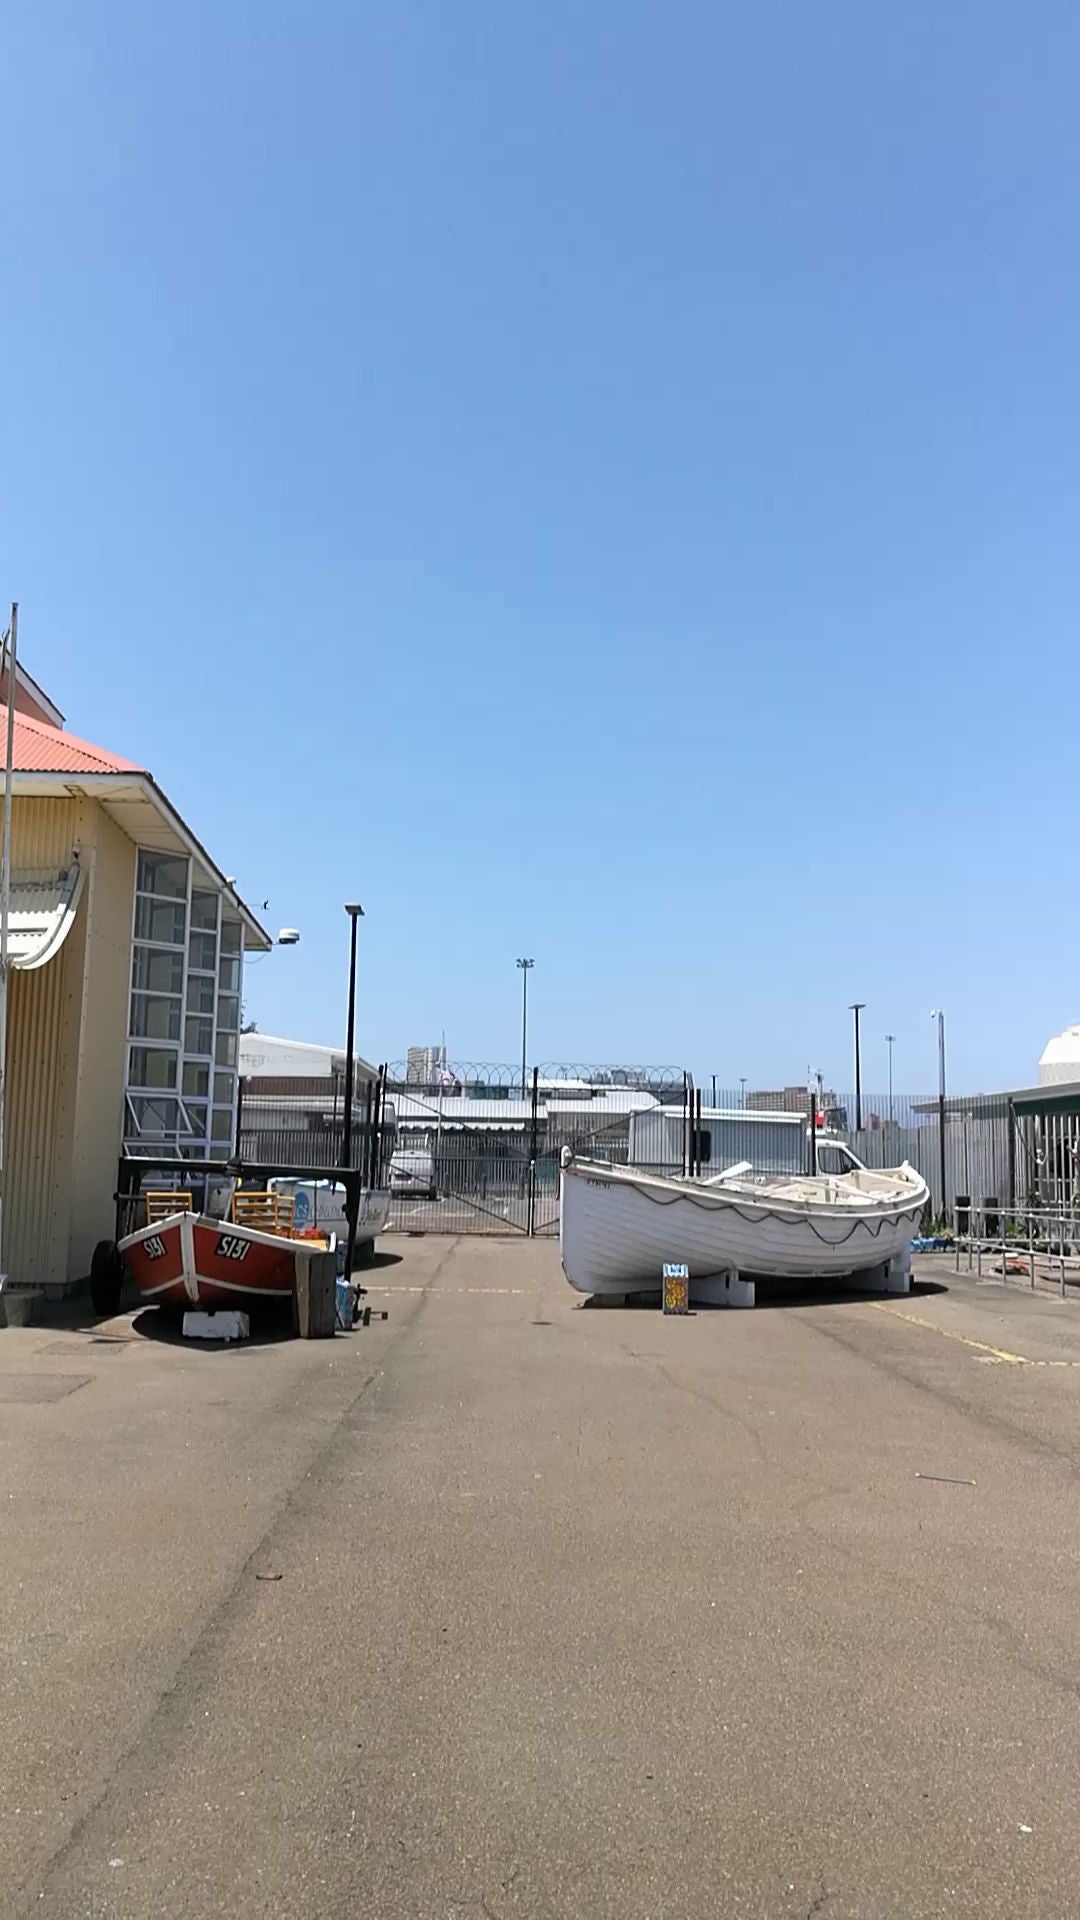  Port Natal Maritime Museum